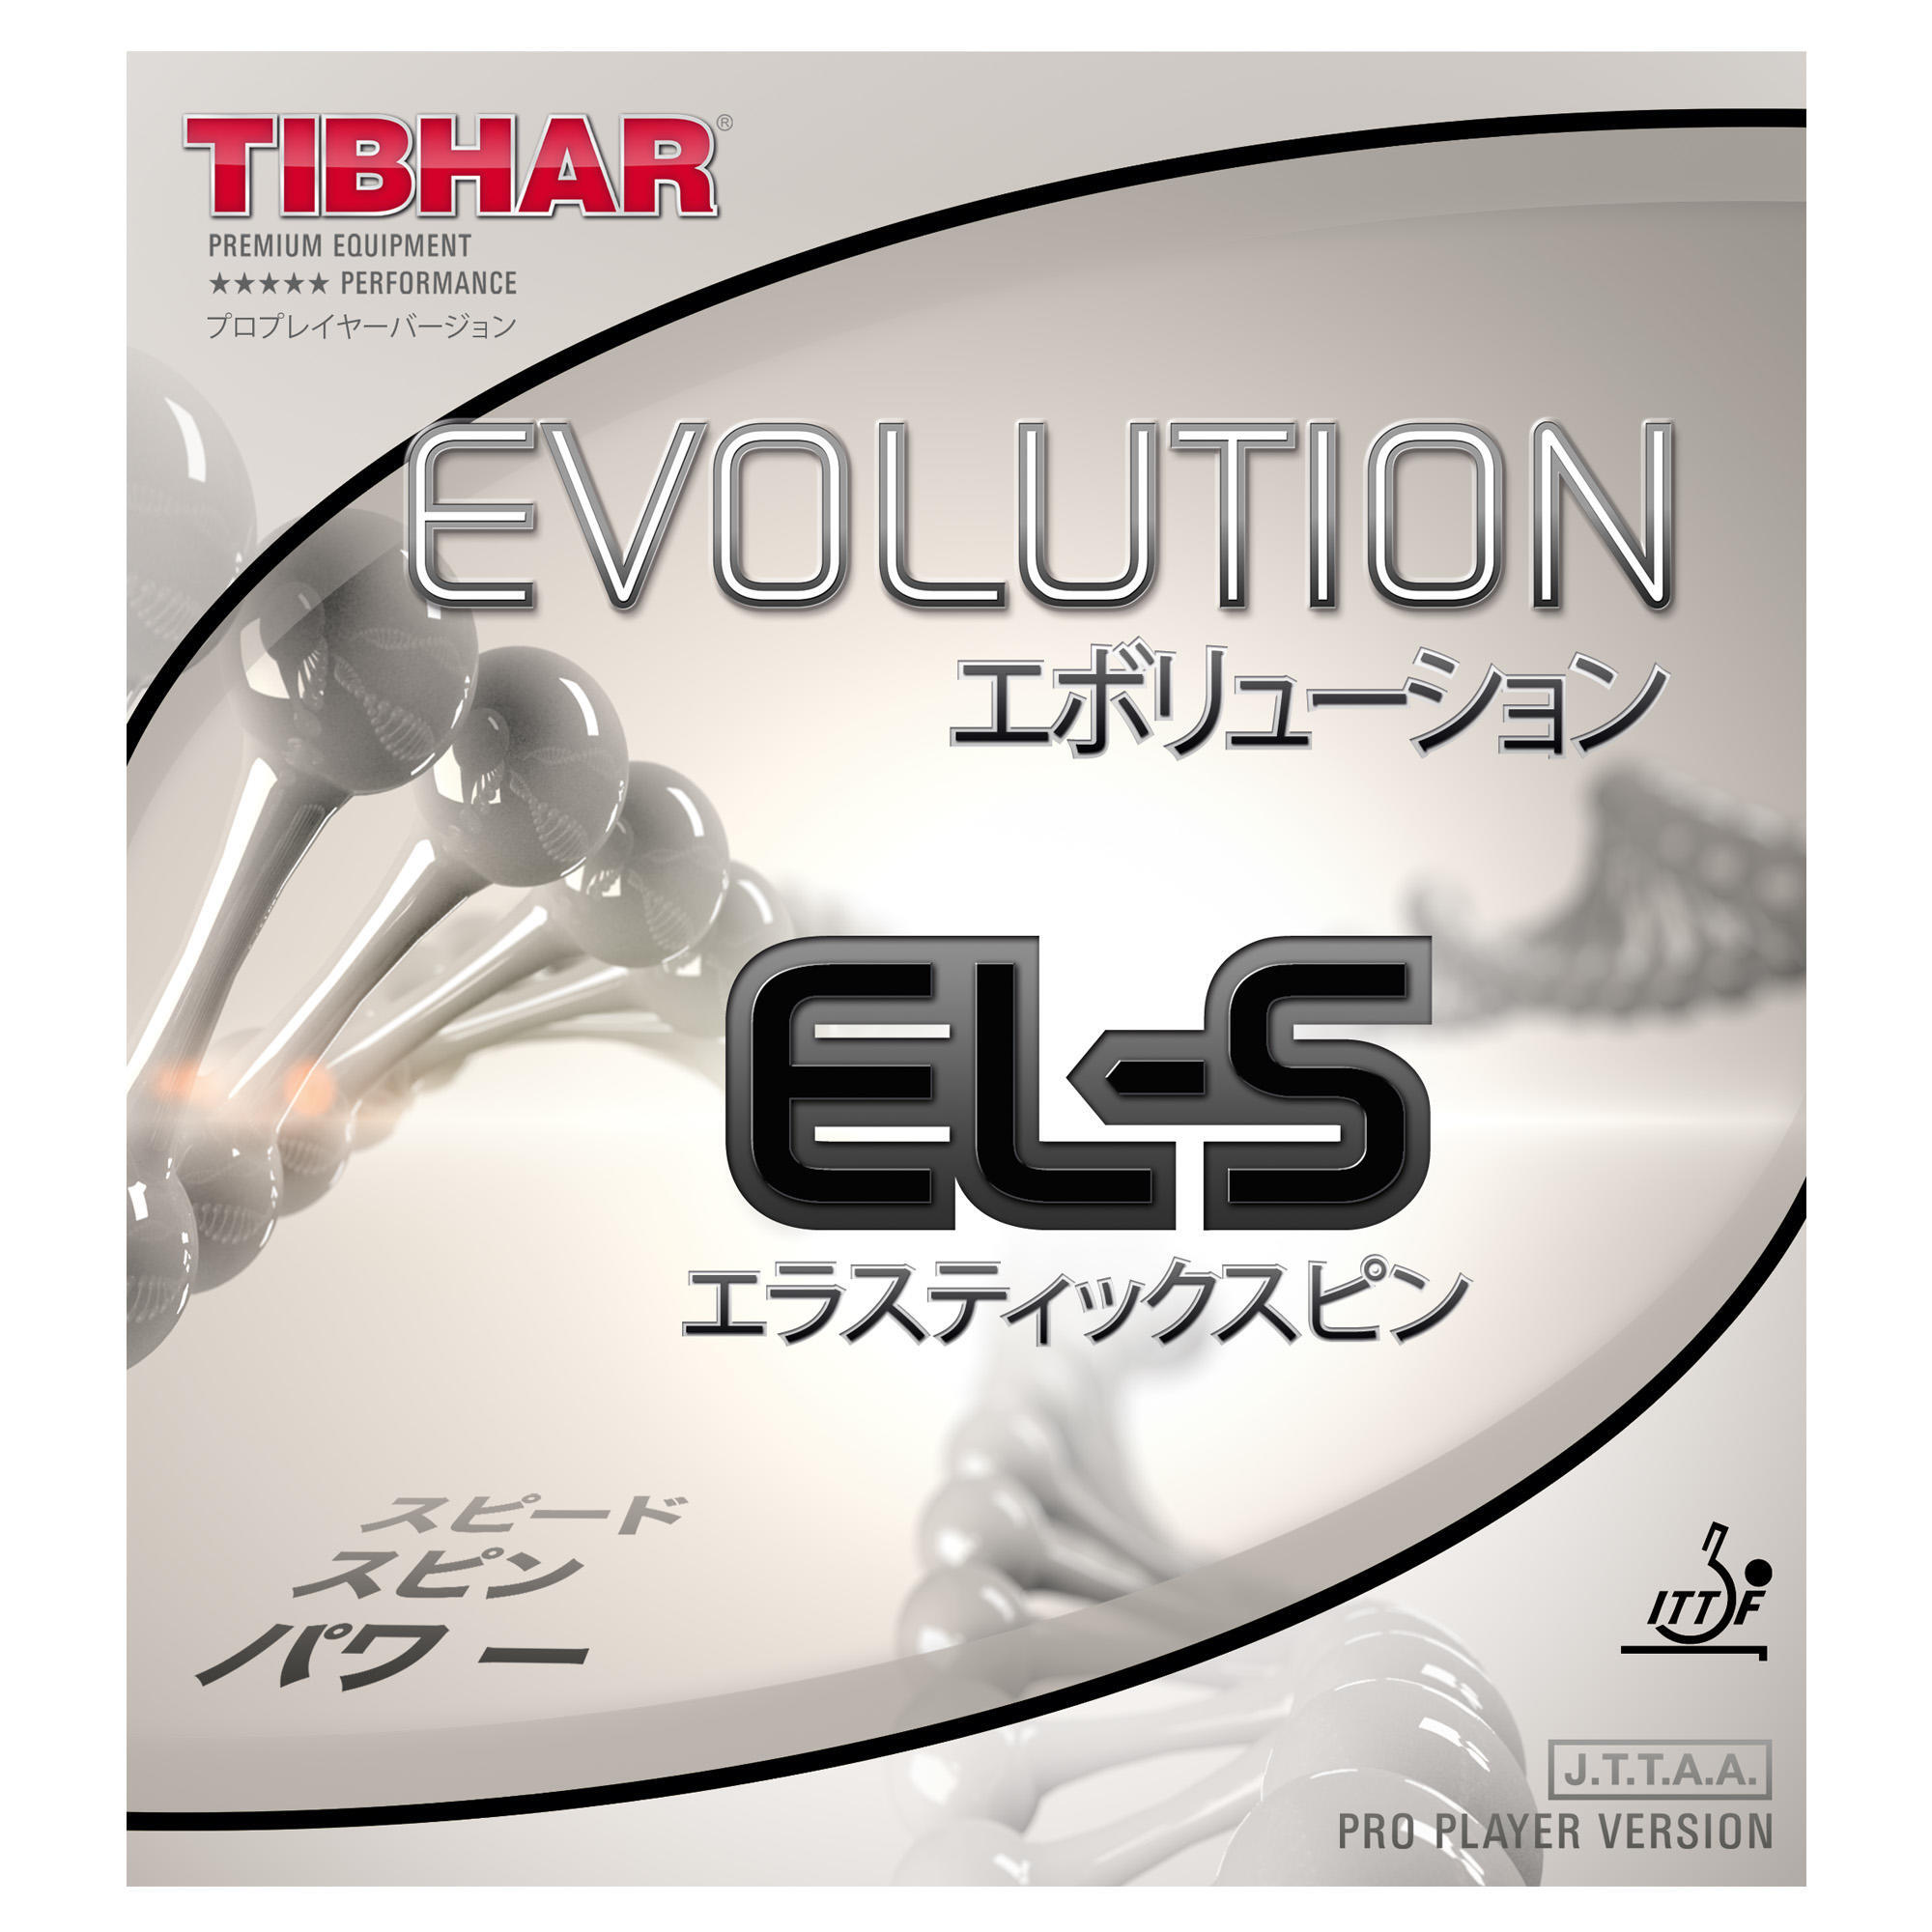 Накладка для настольного тенниса Evolution EL-P TIBHAR накладка tibhar evolution el s цвет черный толщина 2 1 2 2